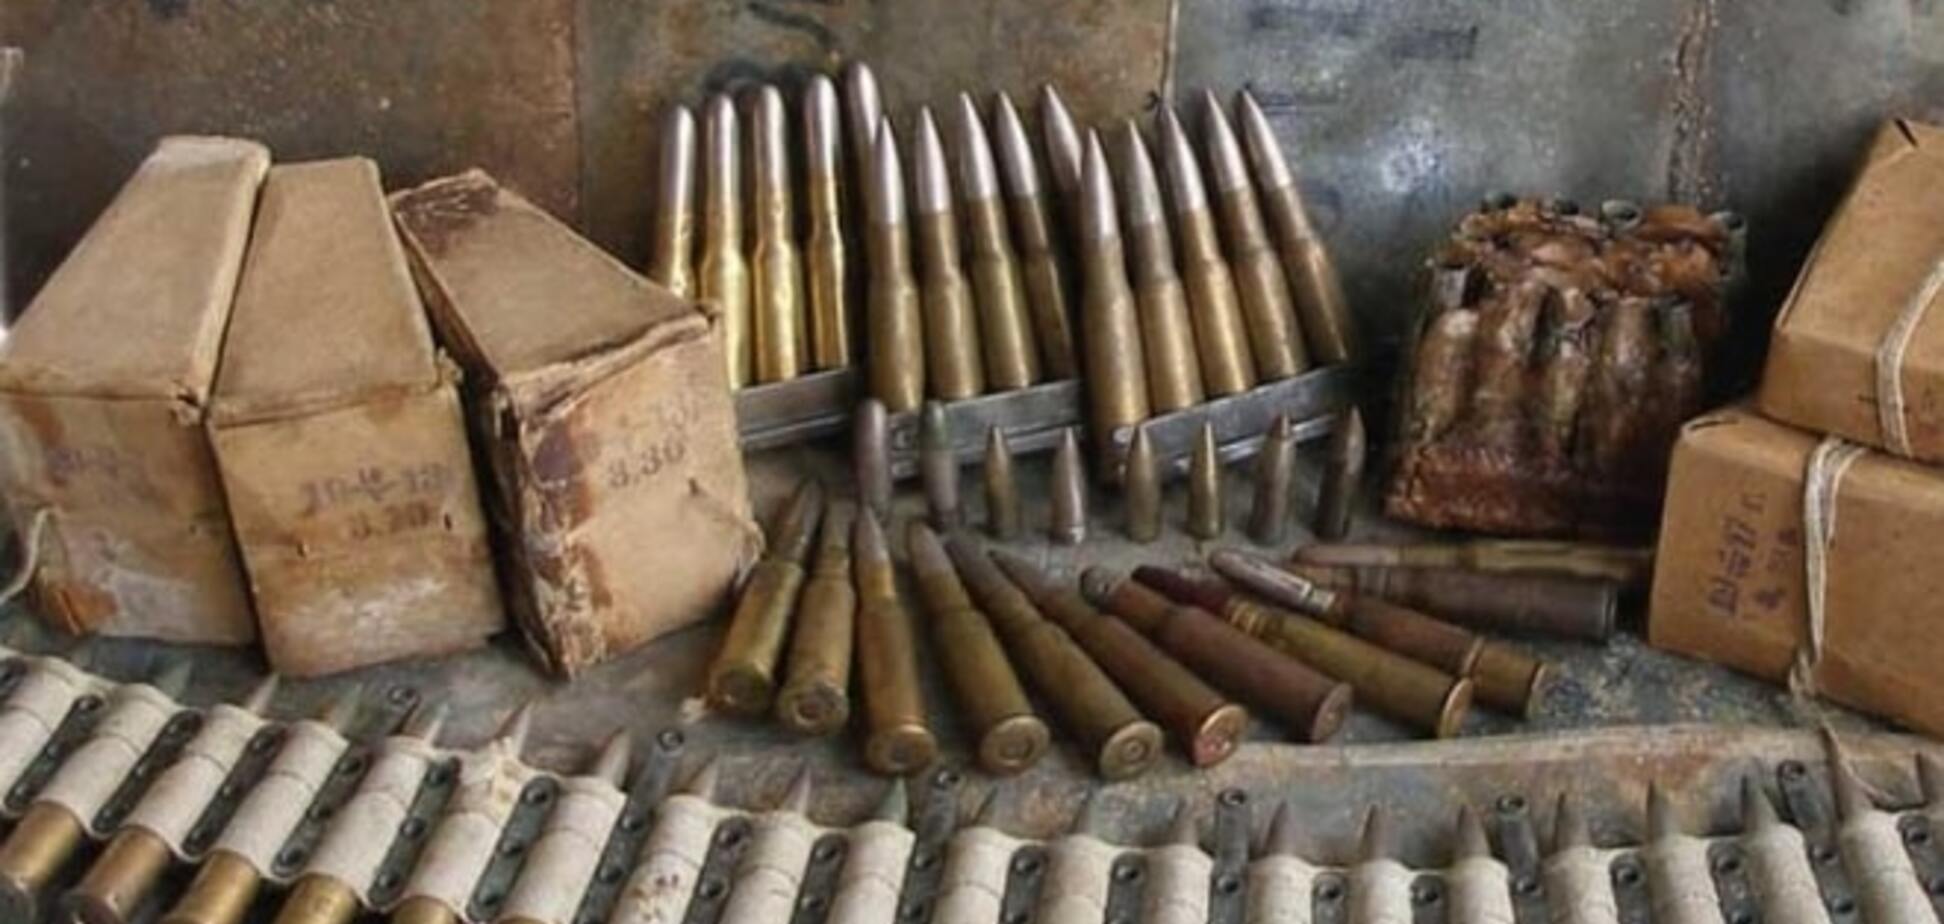 Операция 'Оружие и взрывчатка' на Донбассе: сколько и чего изъяла милиция